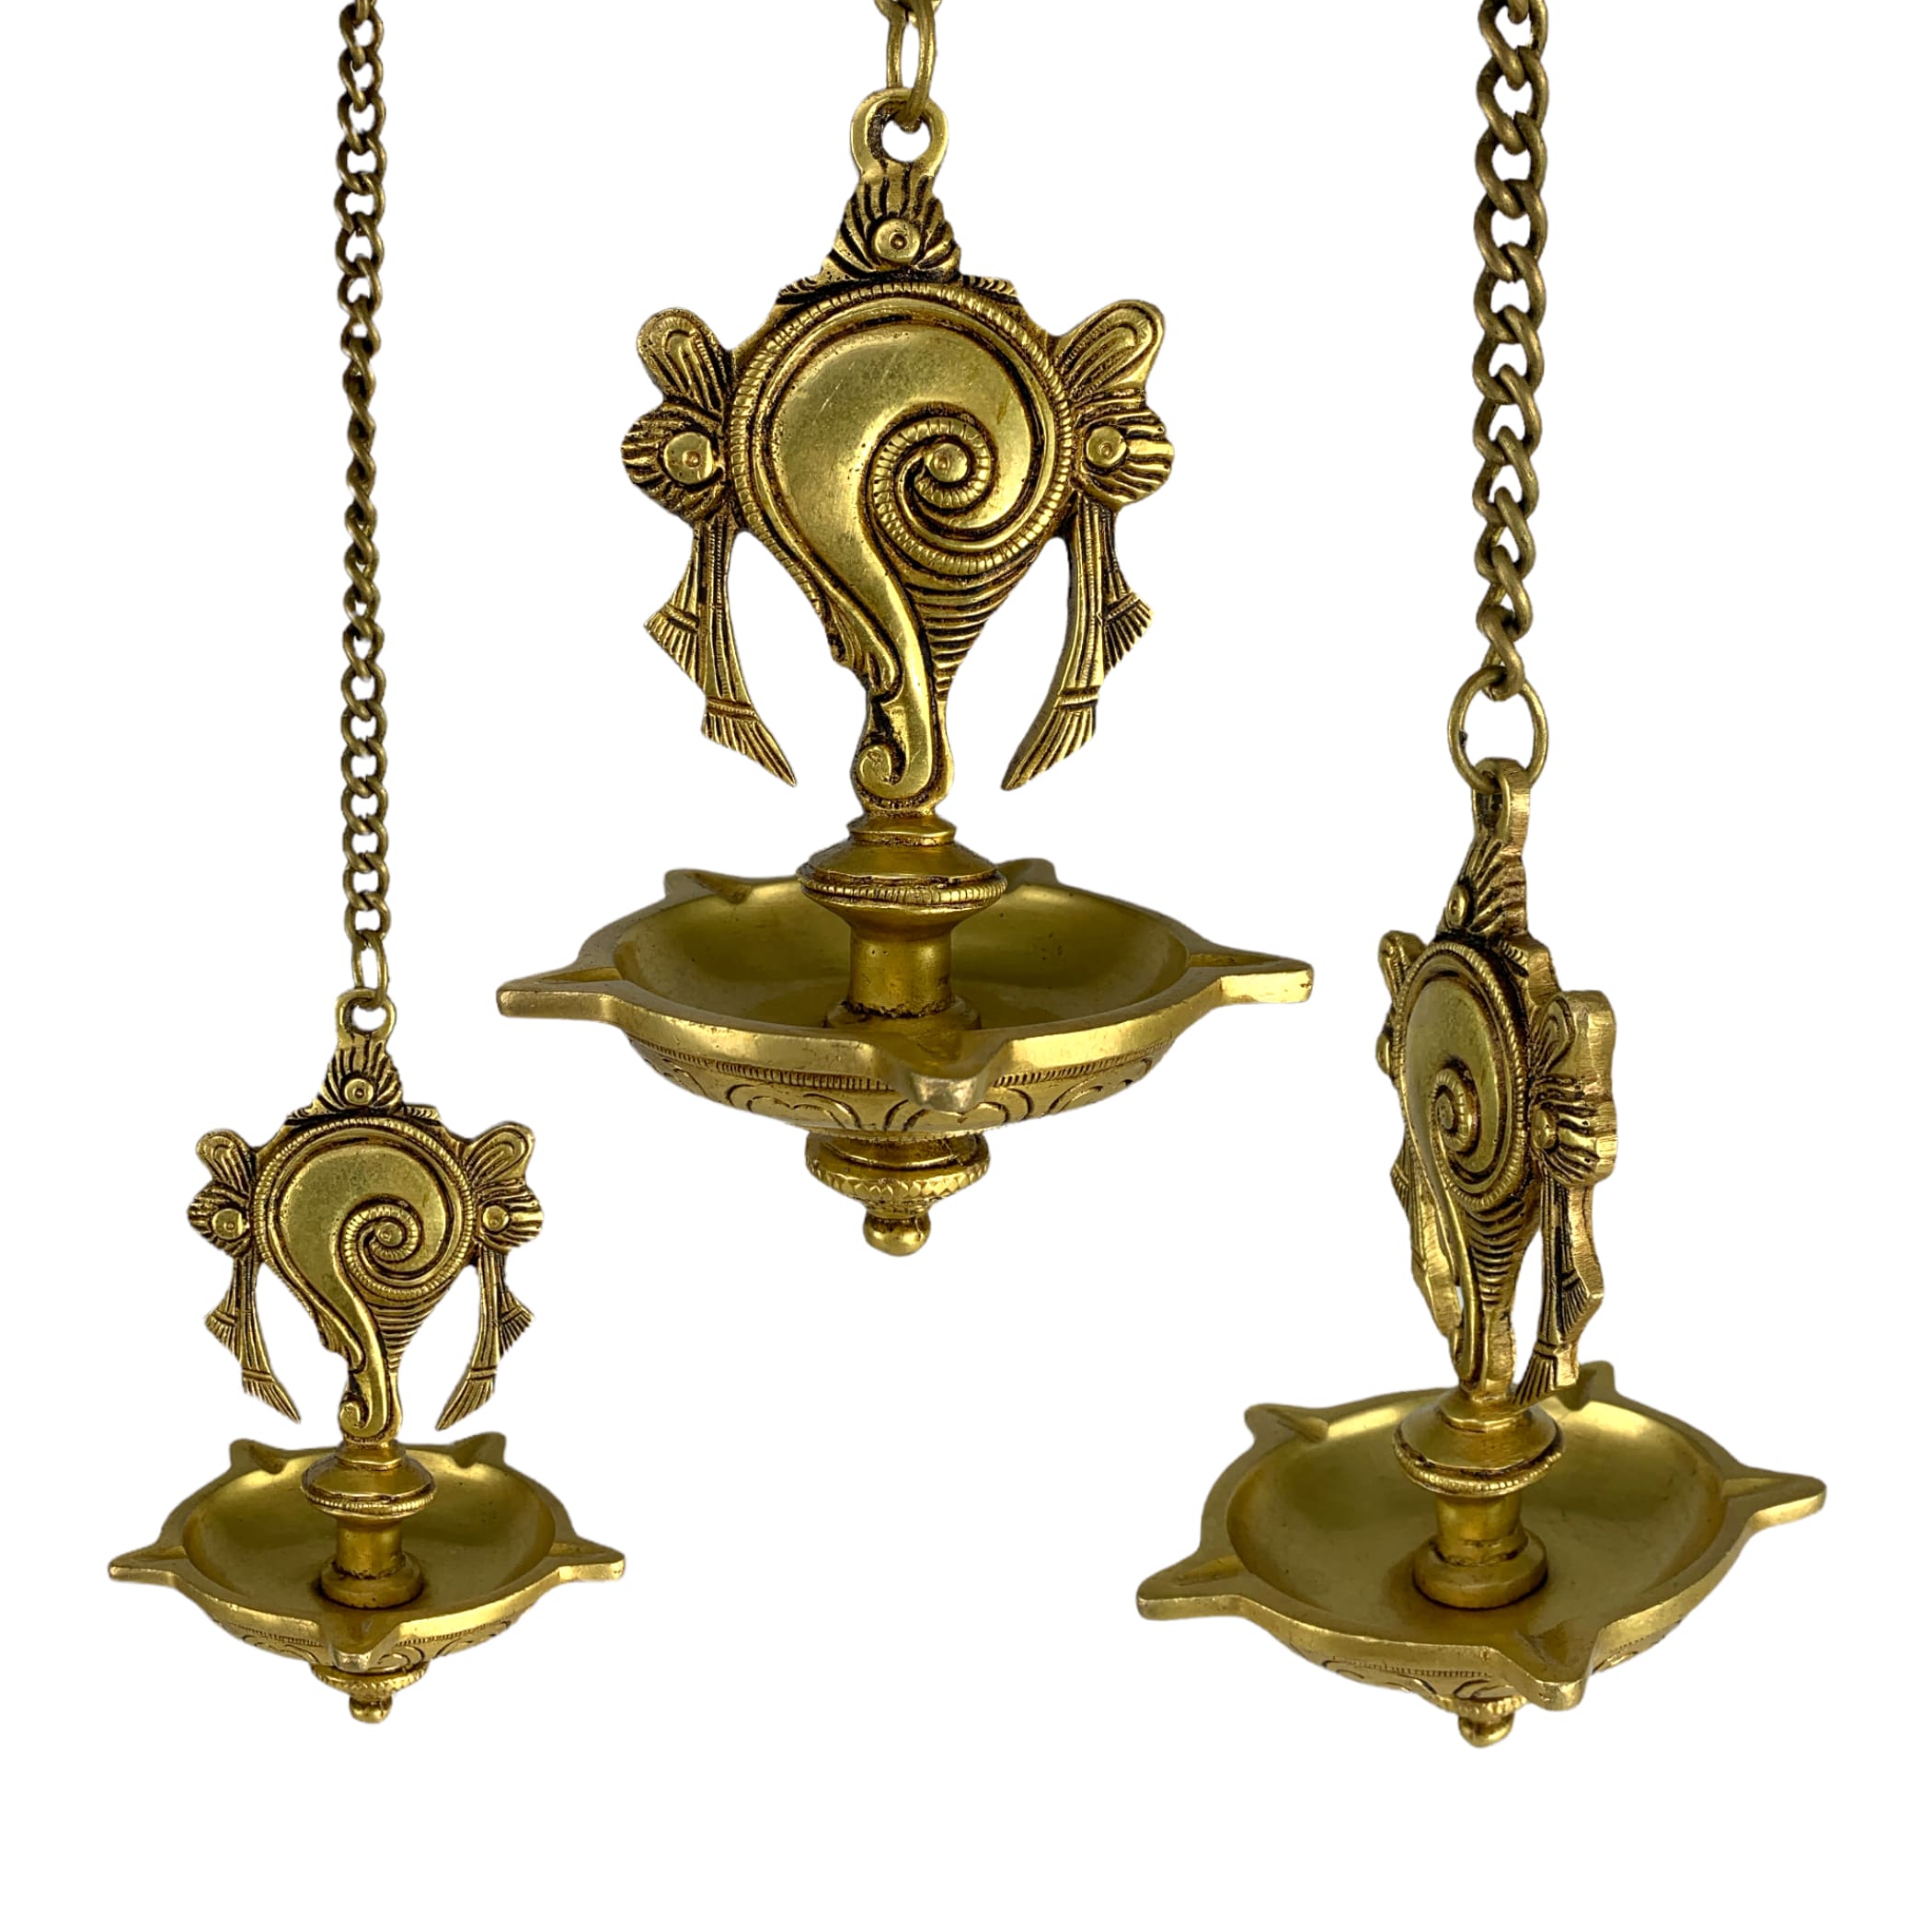 Shank brass oil samai hanging diya diwali decor altar temple